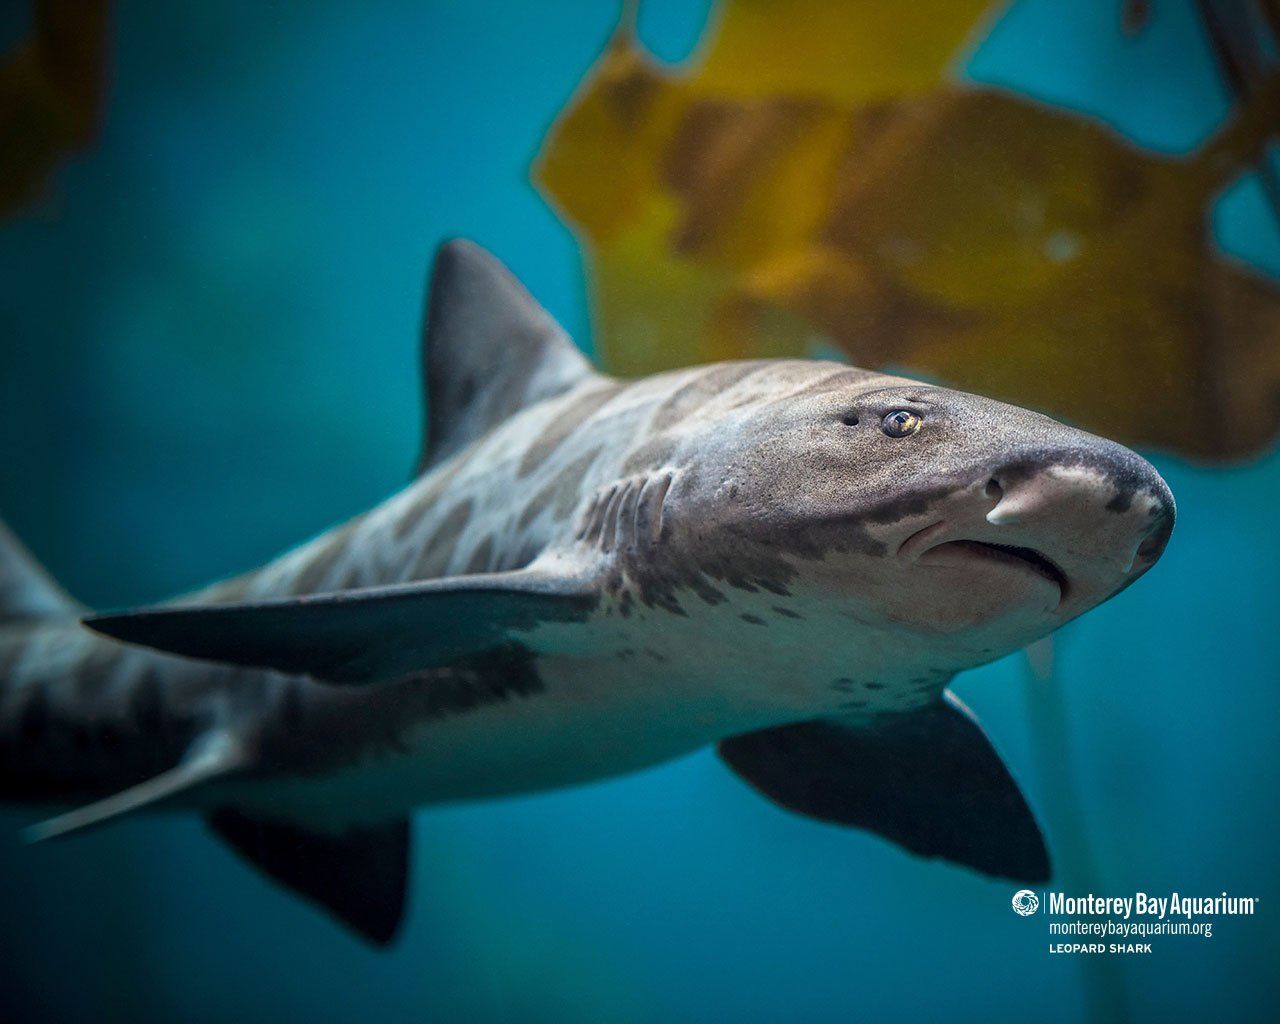 Leopard shark. Wallpaper. Monterey Bay Aquarium